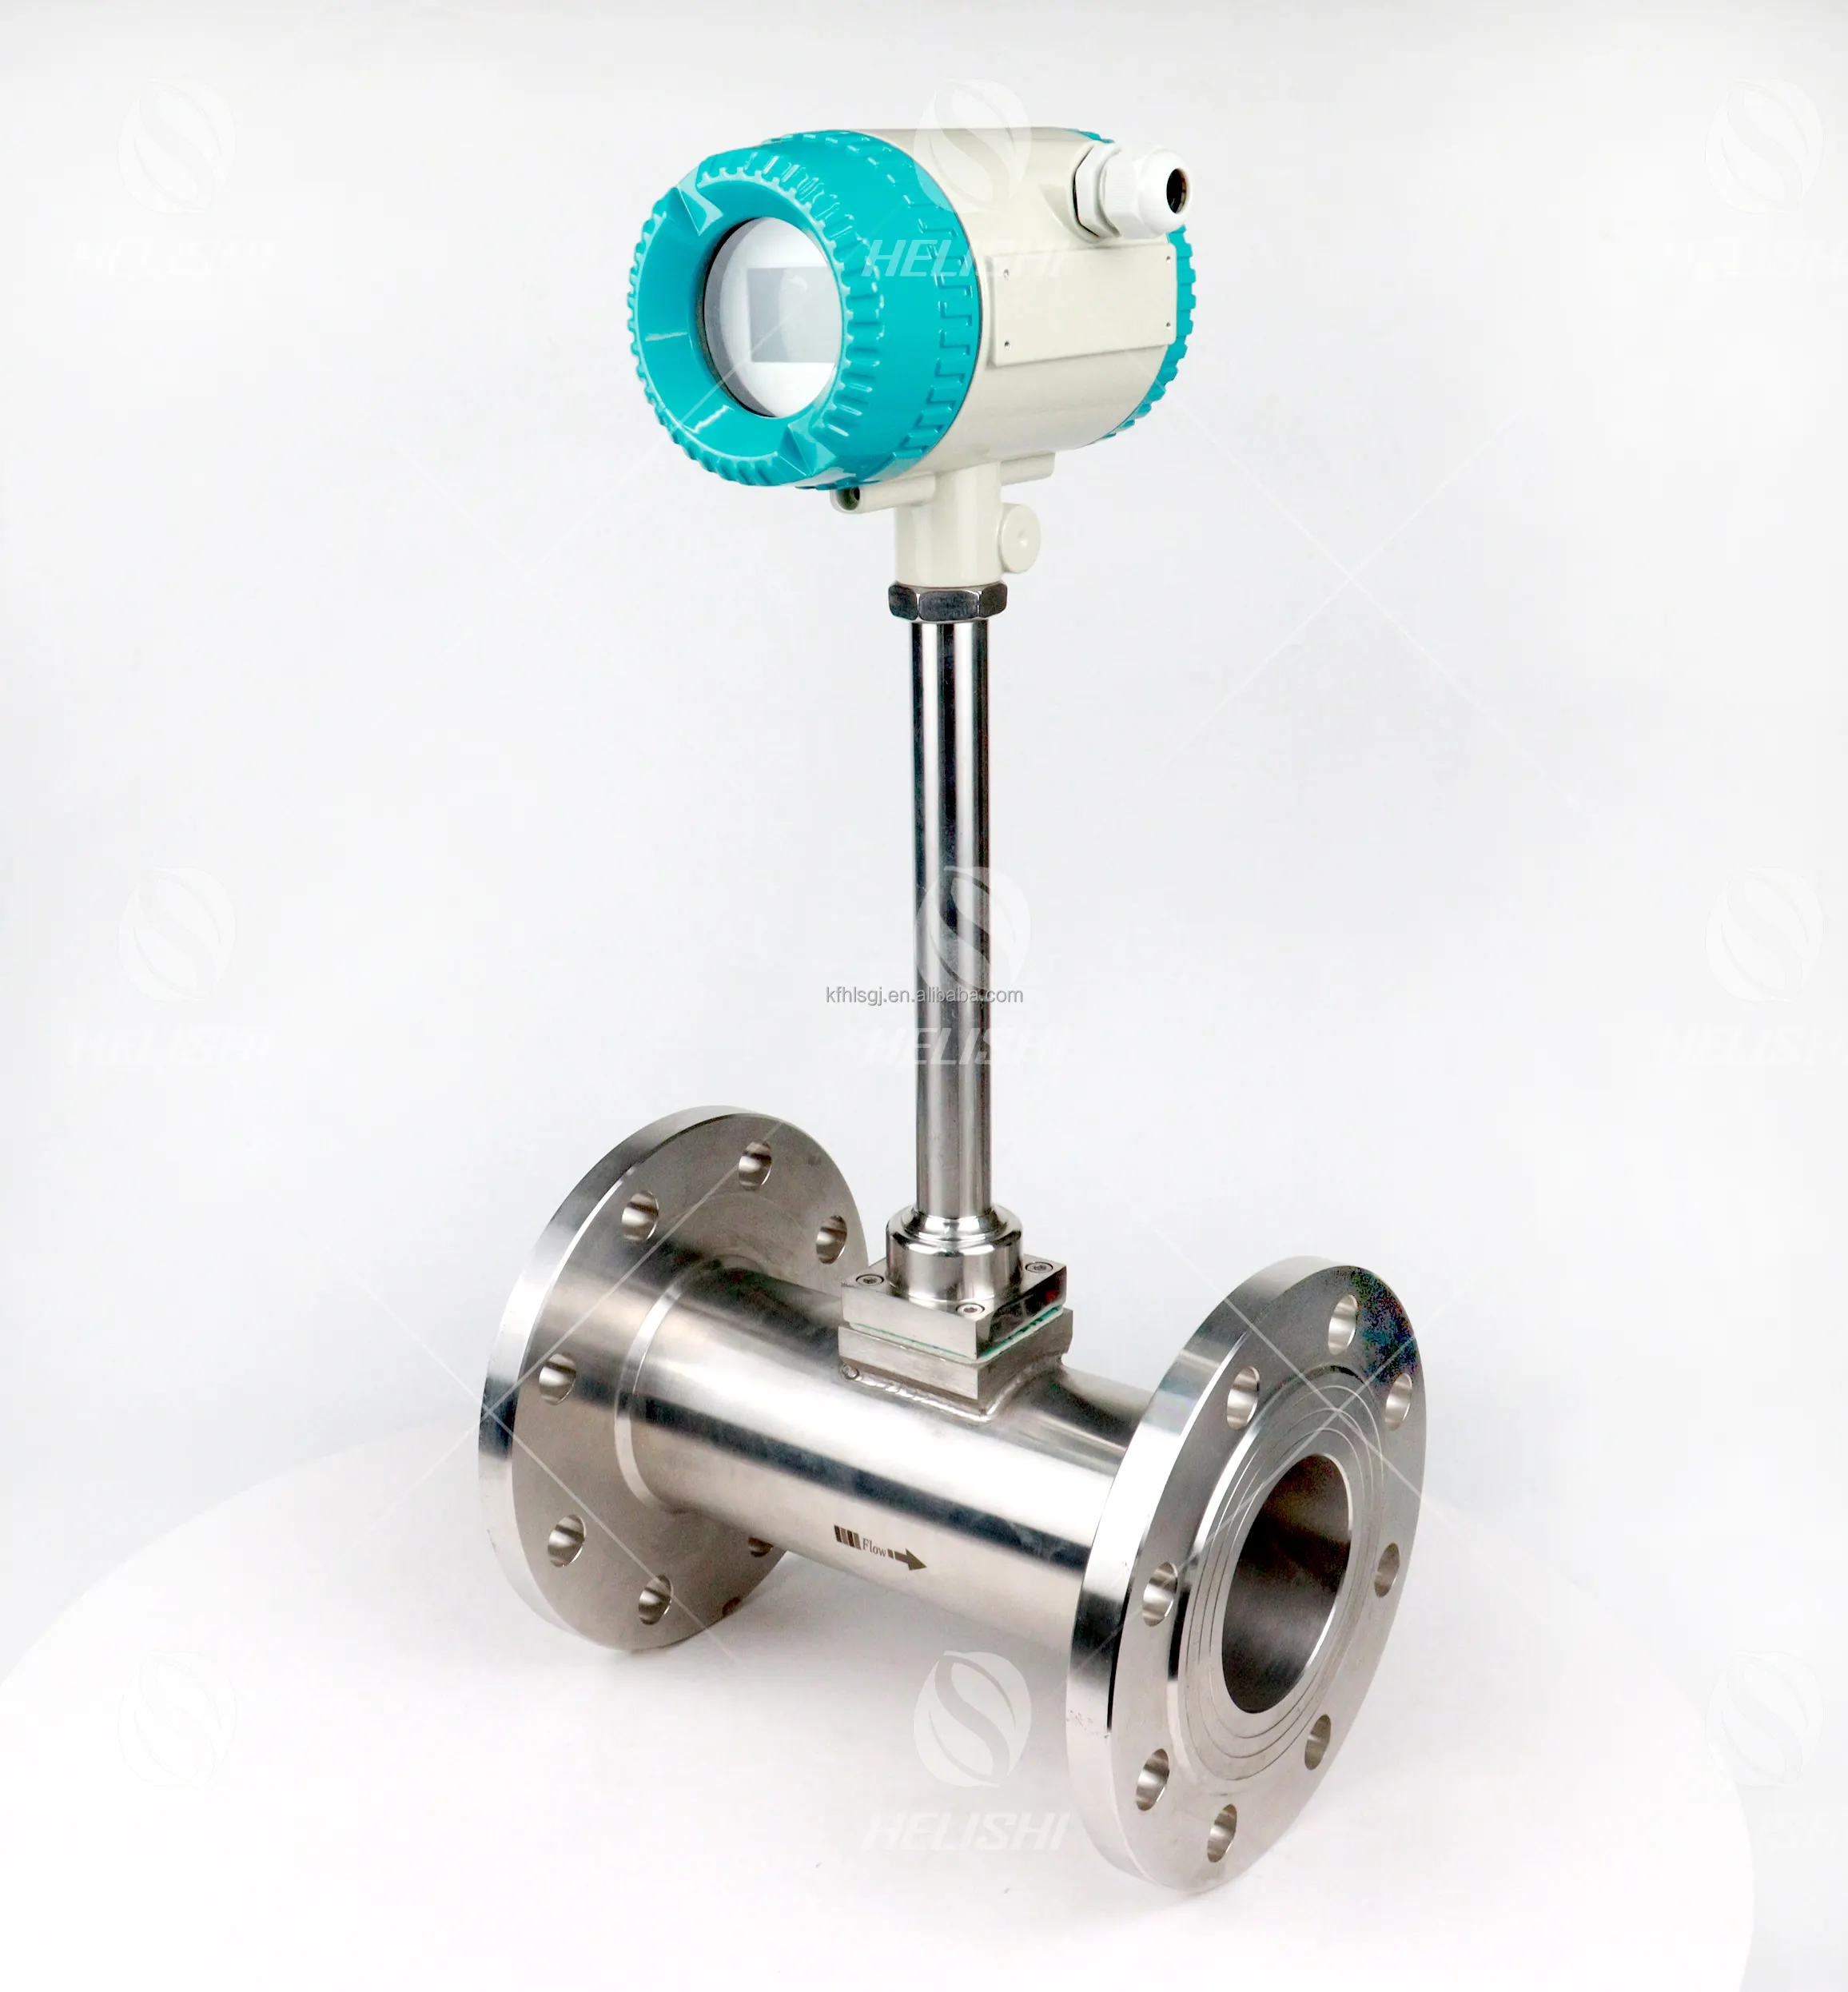 LUGB Liquid Flowmeter 4-20ma Vortex Shedding Flow Meter Compressed Air Vortex Flow Meter Air Flowmeter